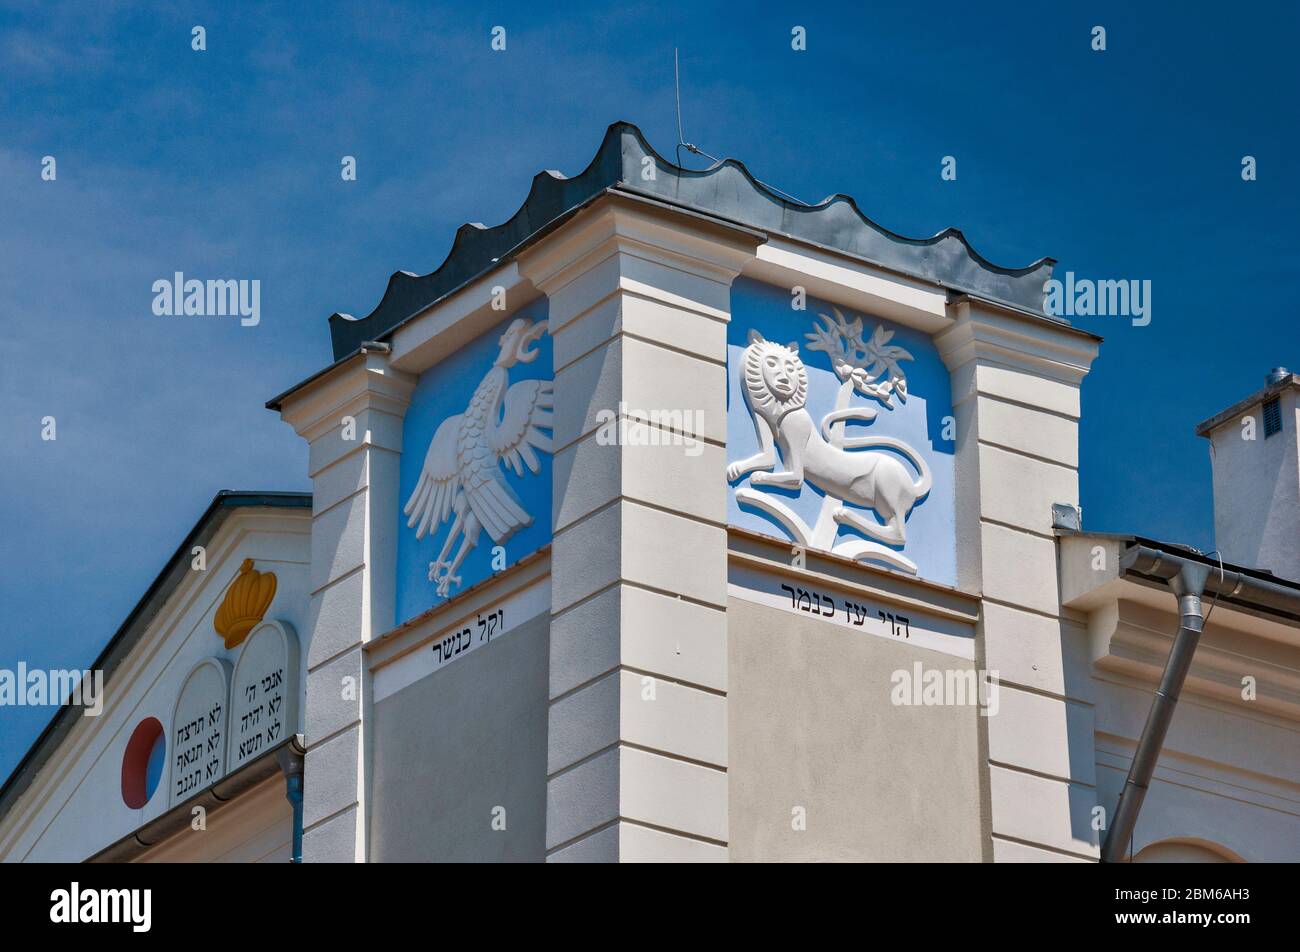 Bas reliefs du Lion de Juda et aigle à la tour de la synagogue Hassidique récemment rénovée, Dabrowa Tarnowska, région de Malopolska aka Lesse Pologne, Polan Banque D'Images